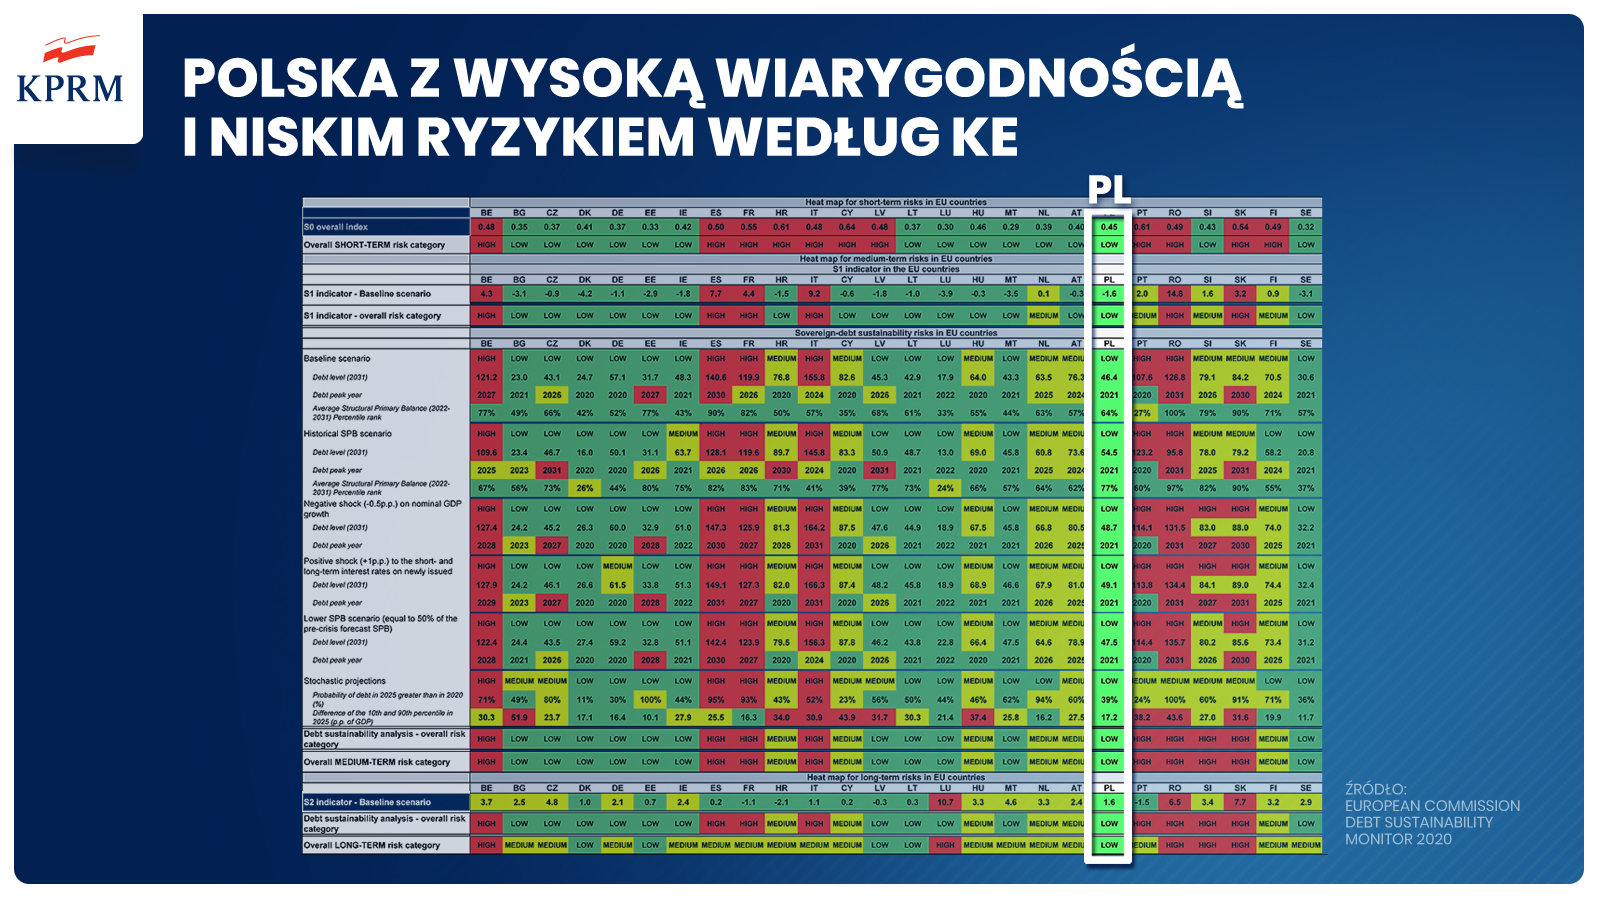 Wysoka wiarygodność finansowa i gospodarcza Polski!